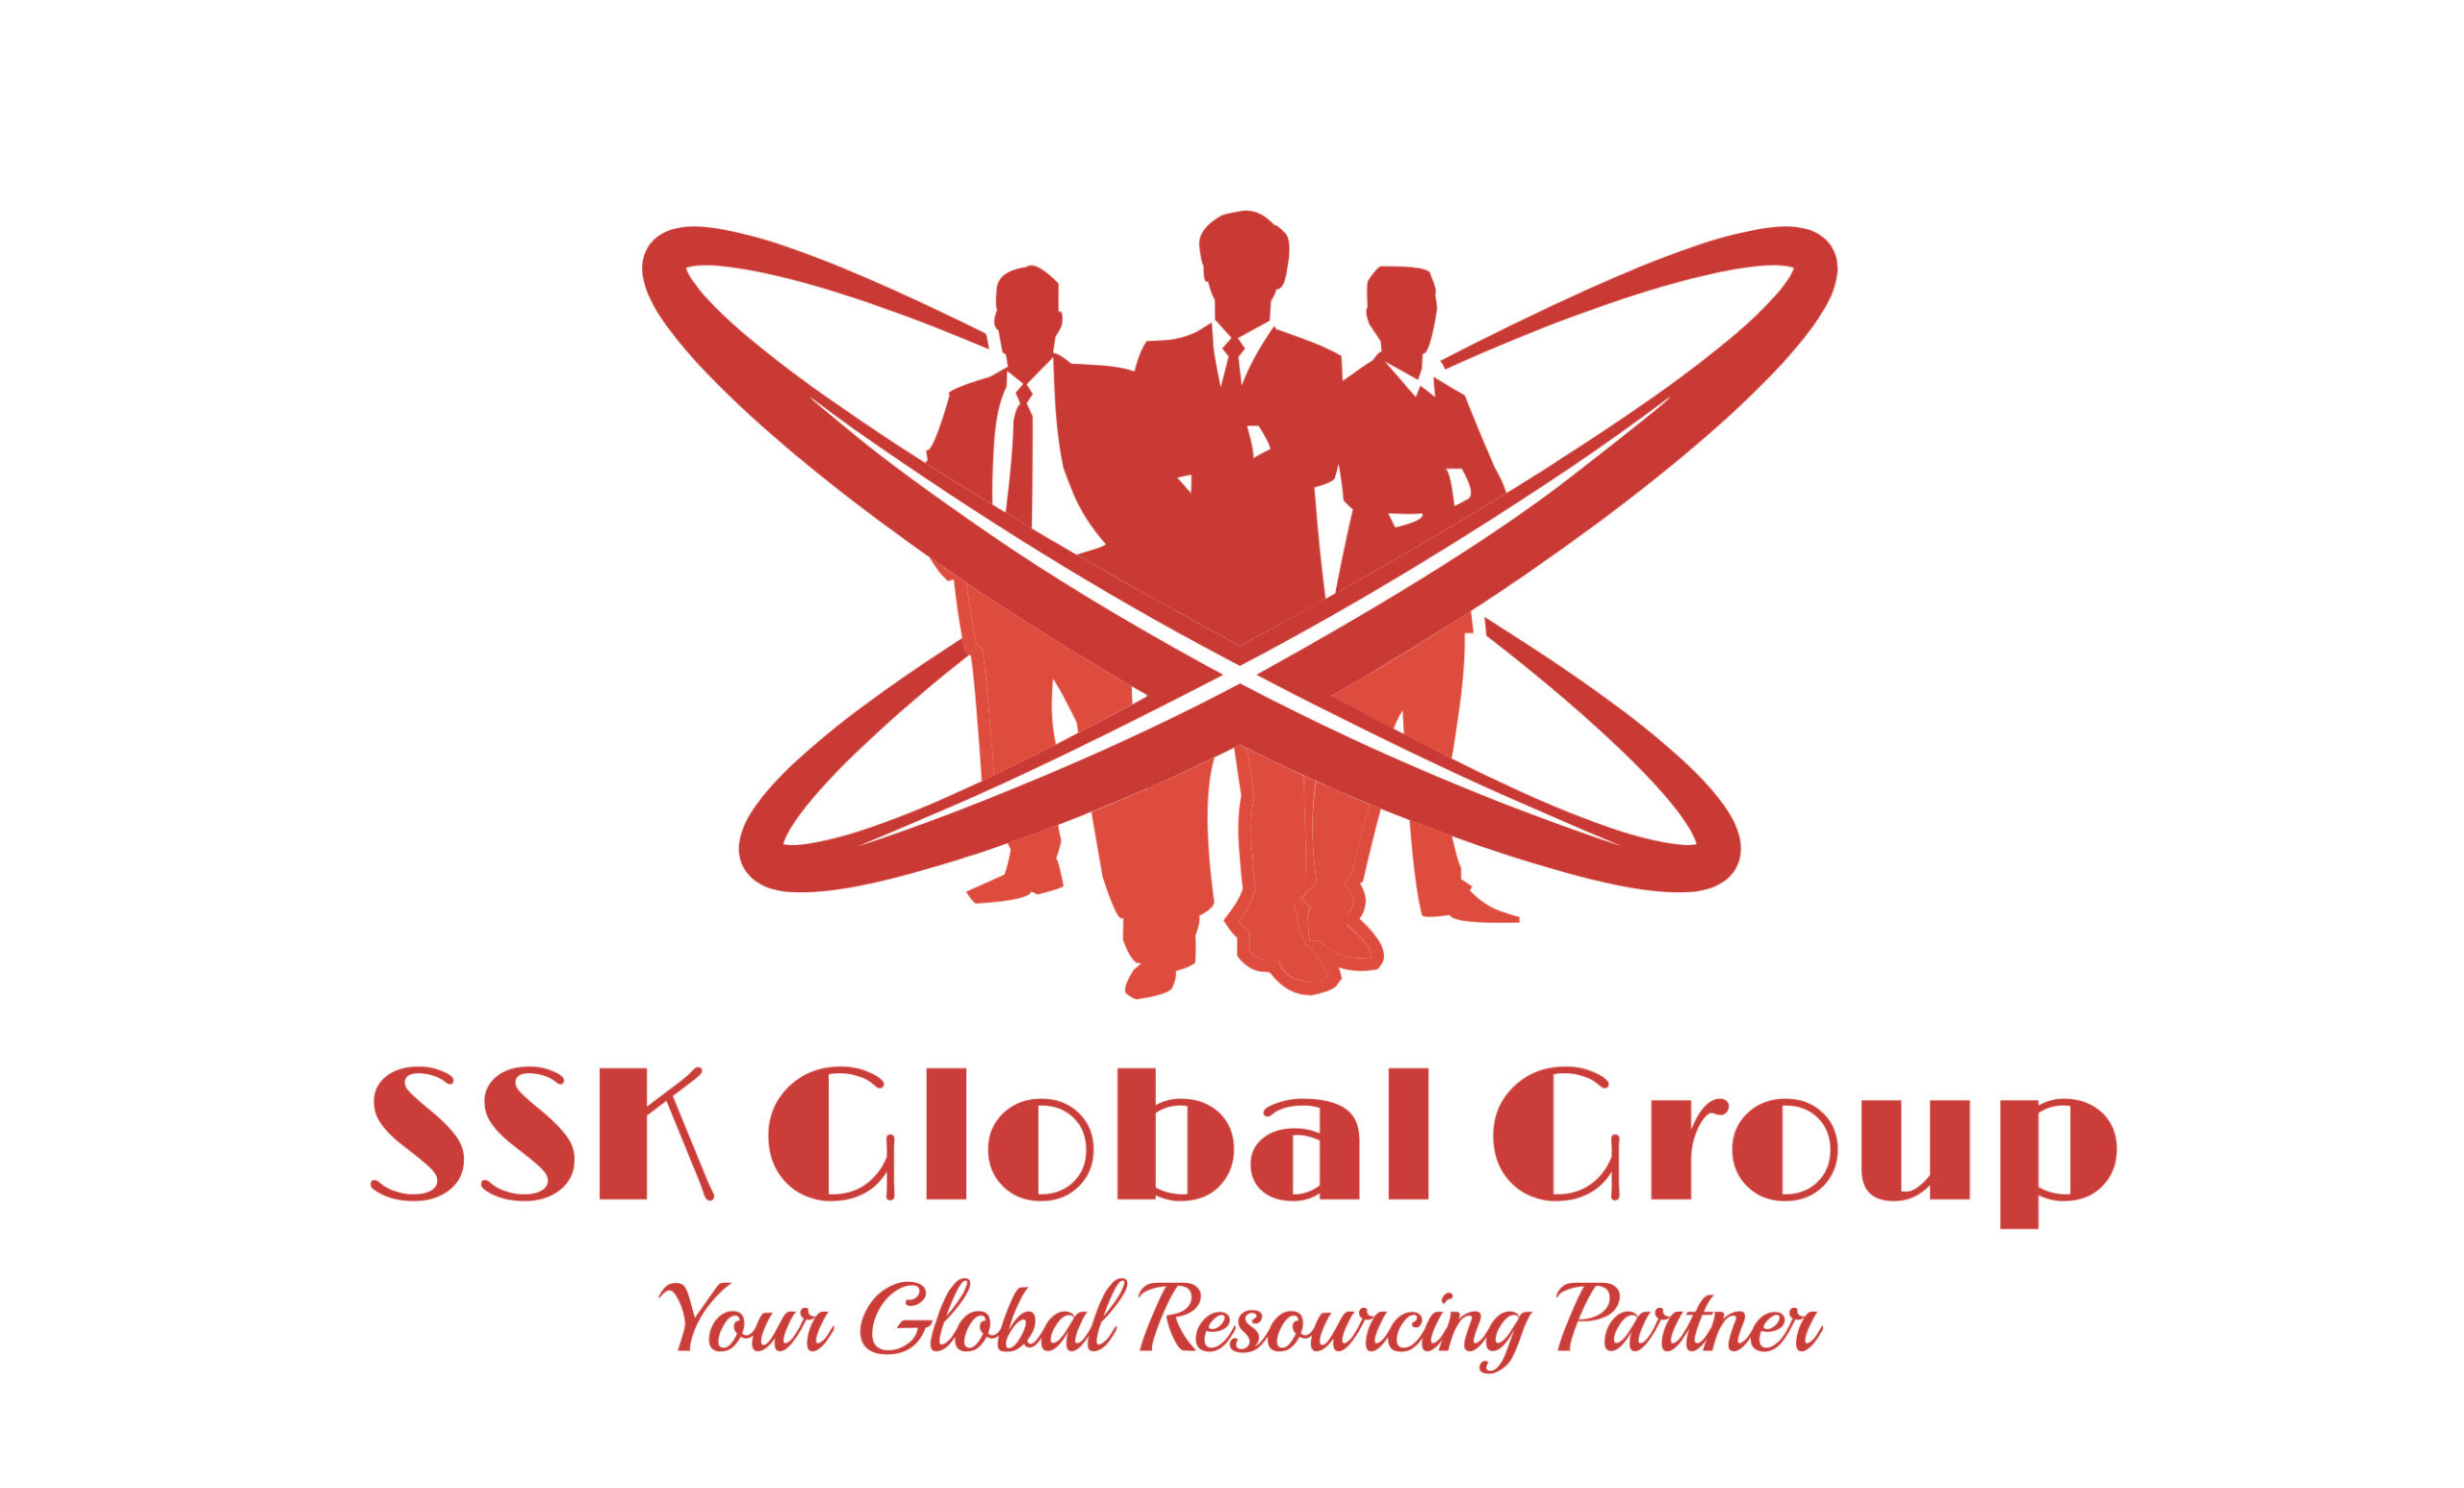 SSK Global Group